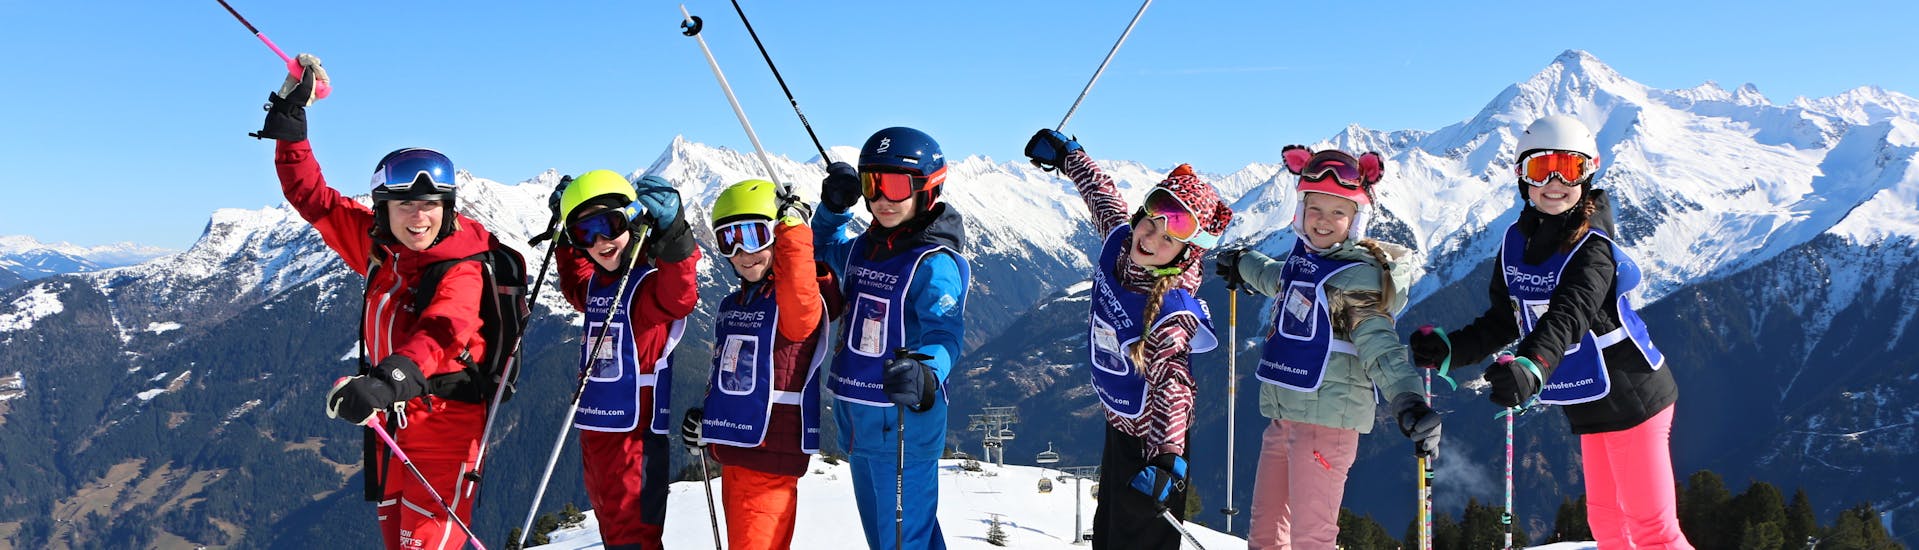 Cours de ski Enfants dès 5 ans - Expérimentés avec Ski School Snowsports Mayrhofen.